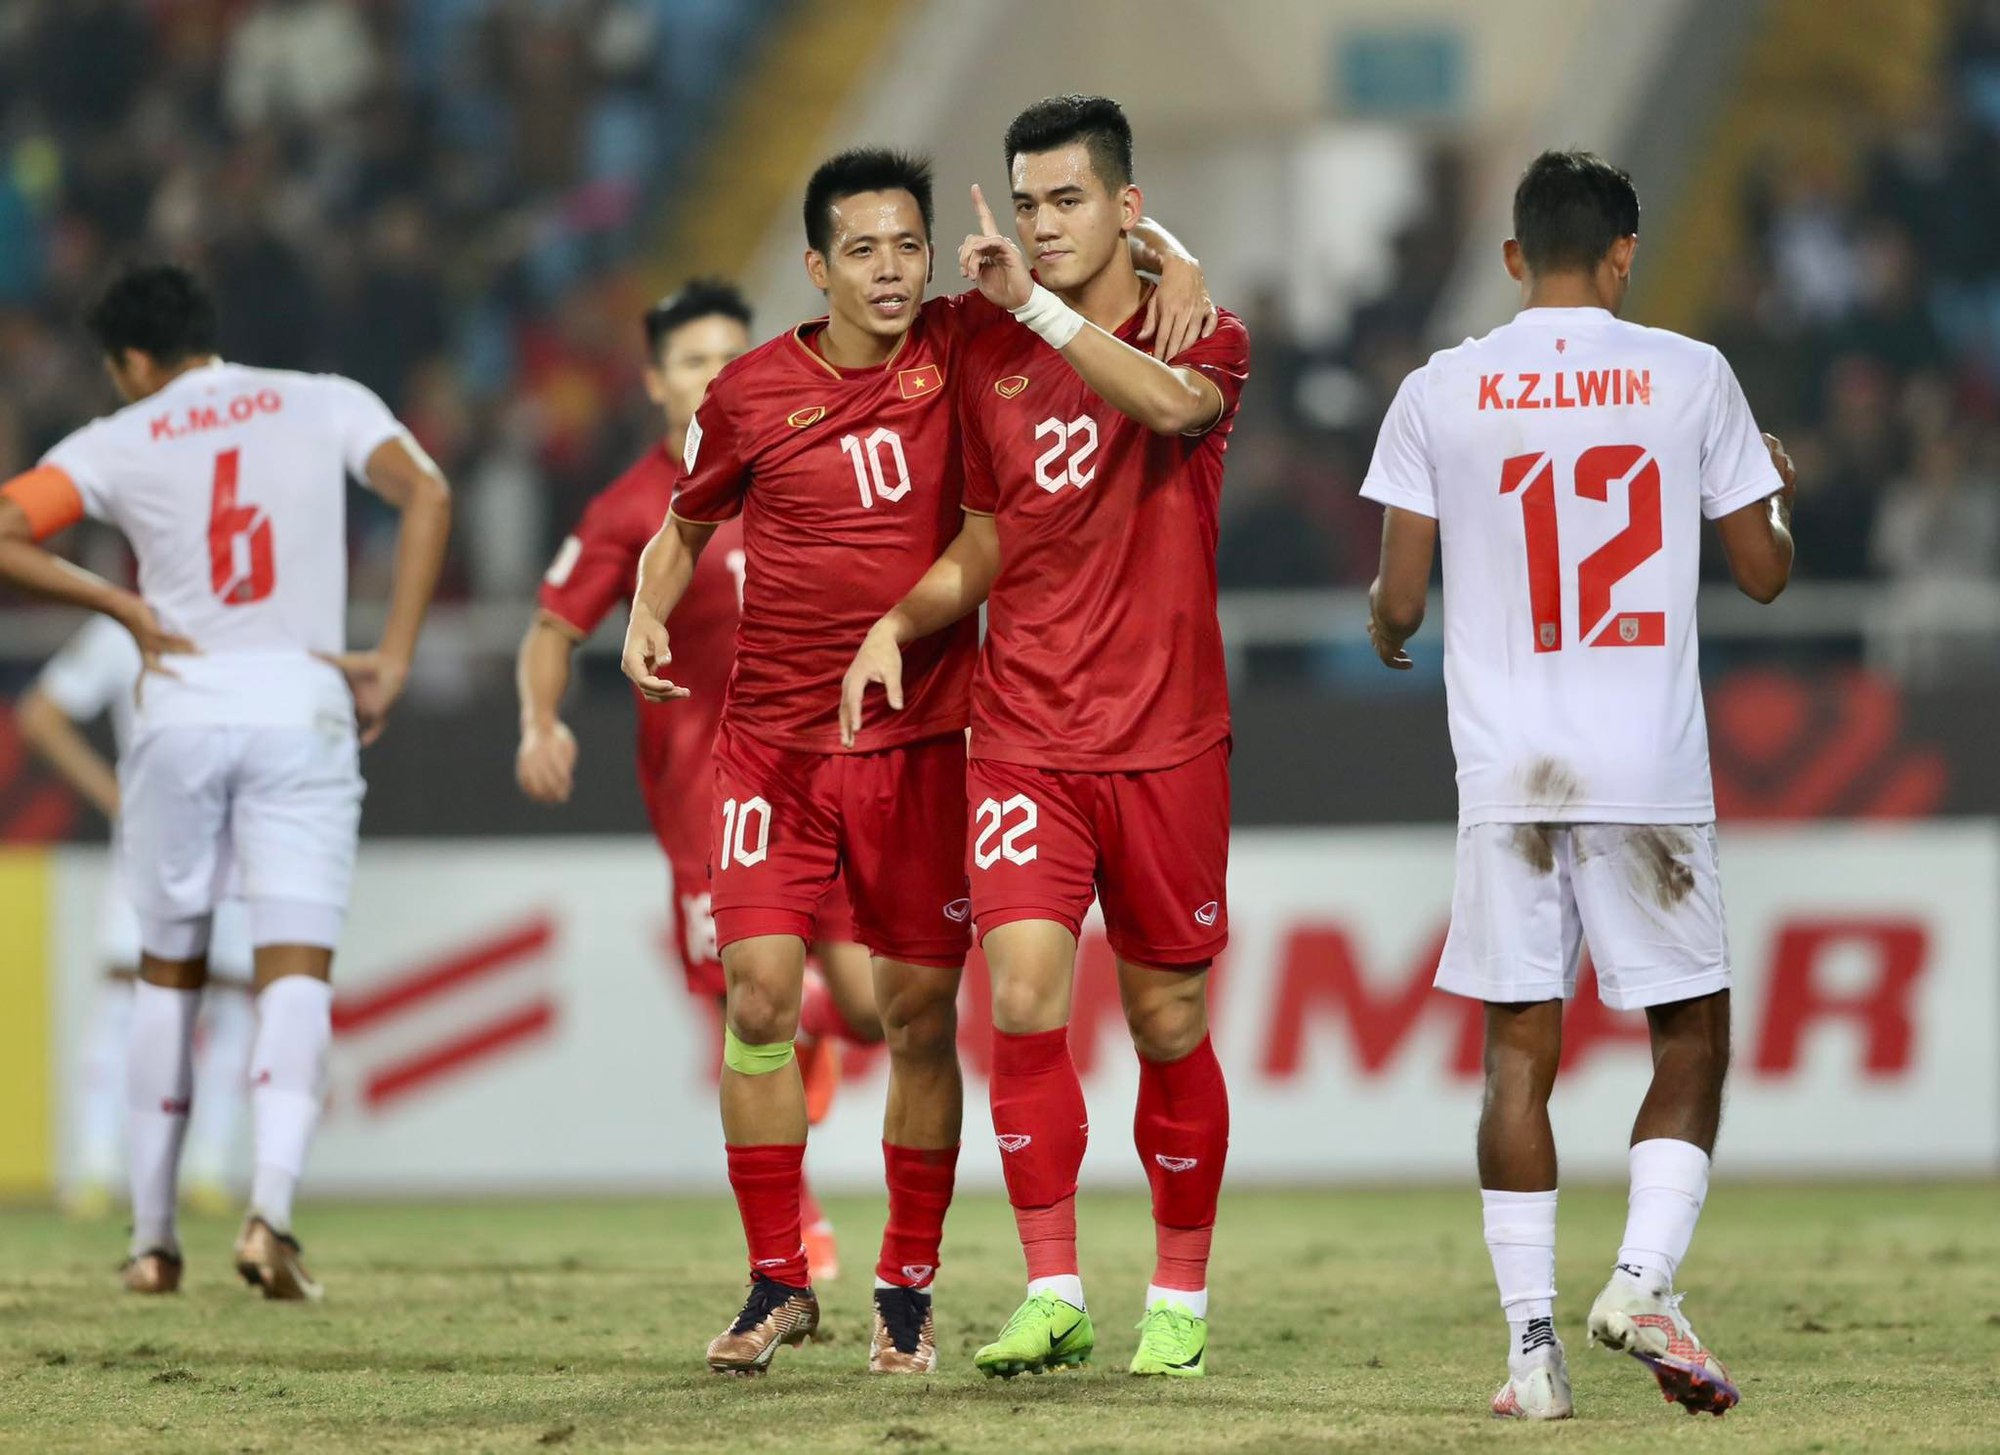 Tiến Linh hé lộ về tình hình chấn thương trước trận bán kết gặp Indonesia